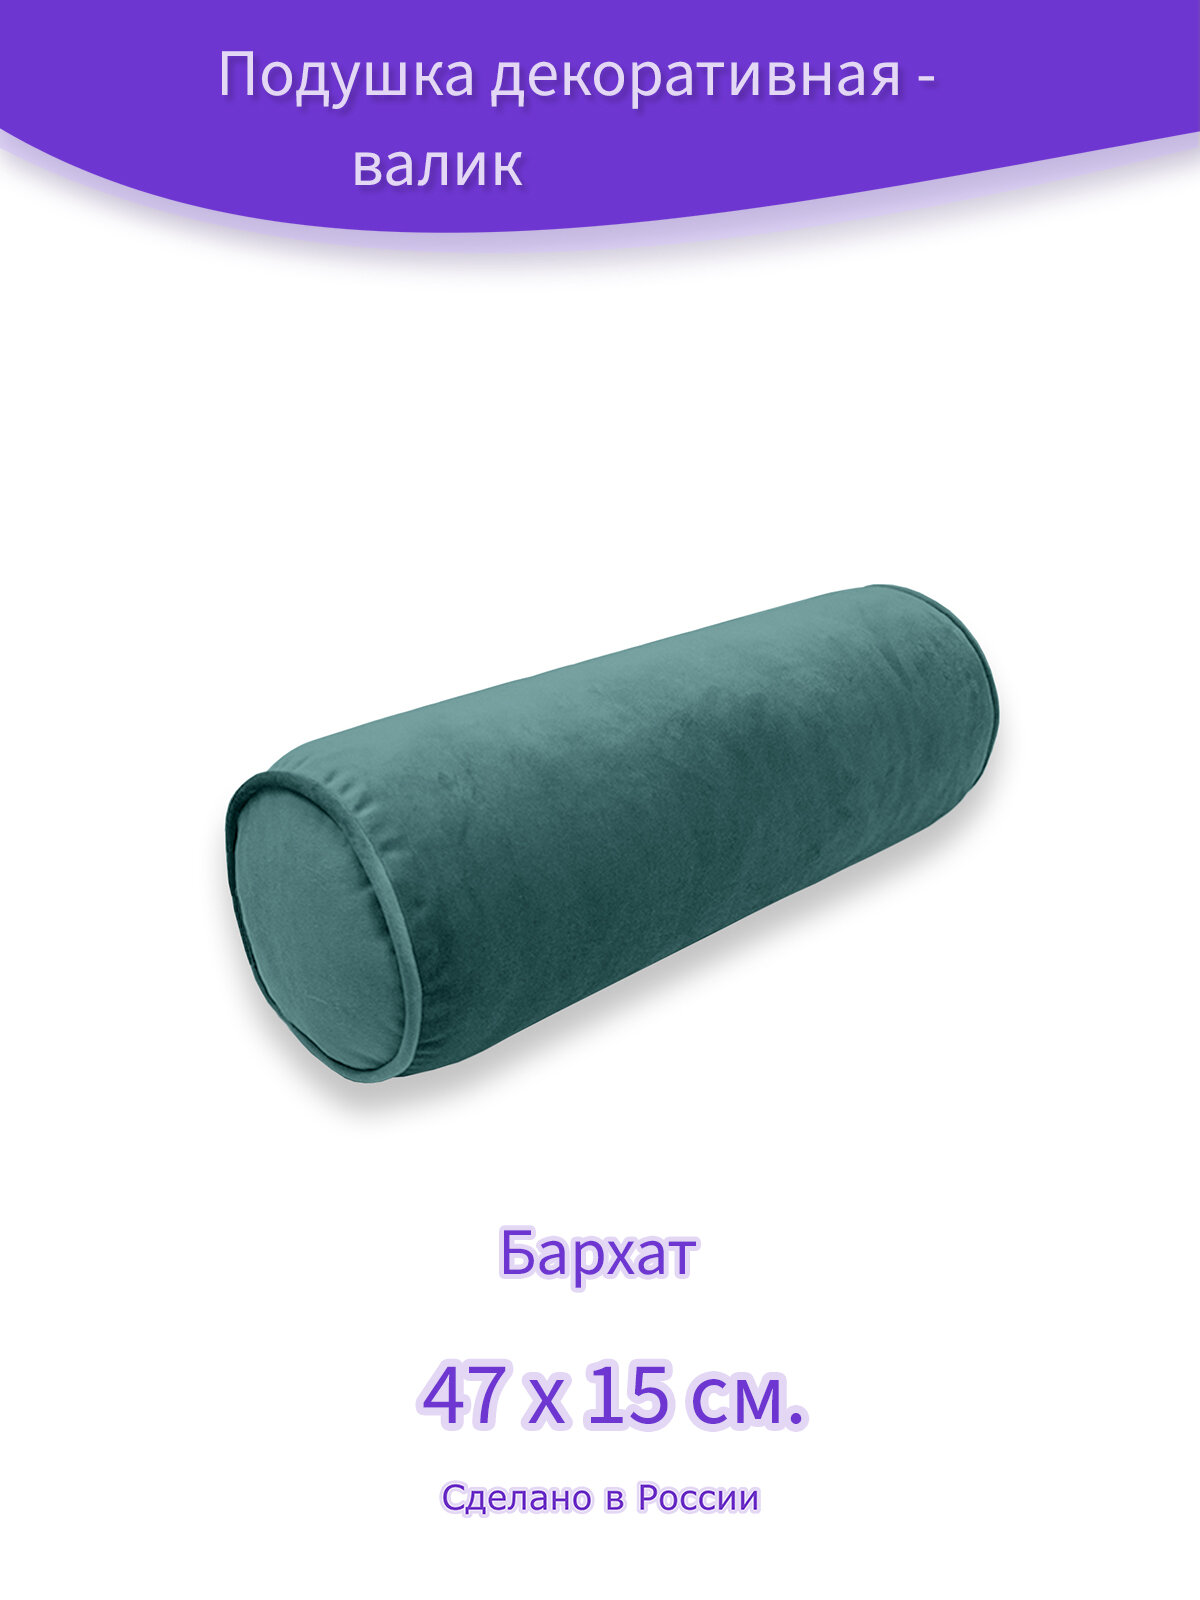 Декоративная подушка - валик "Бархат пыльно-бирюзовый", 15 х47 см.